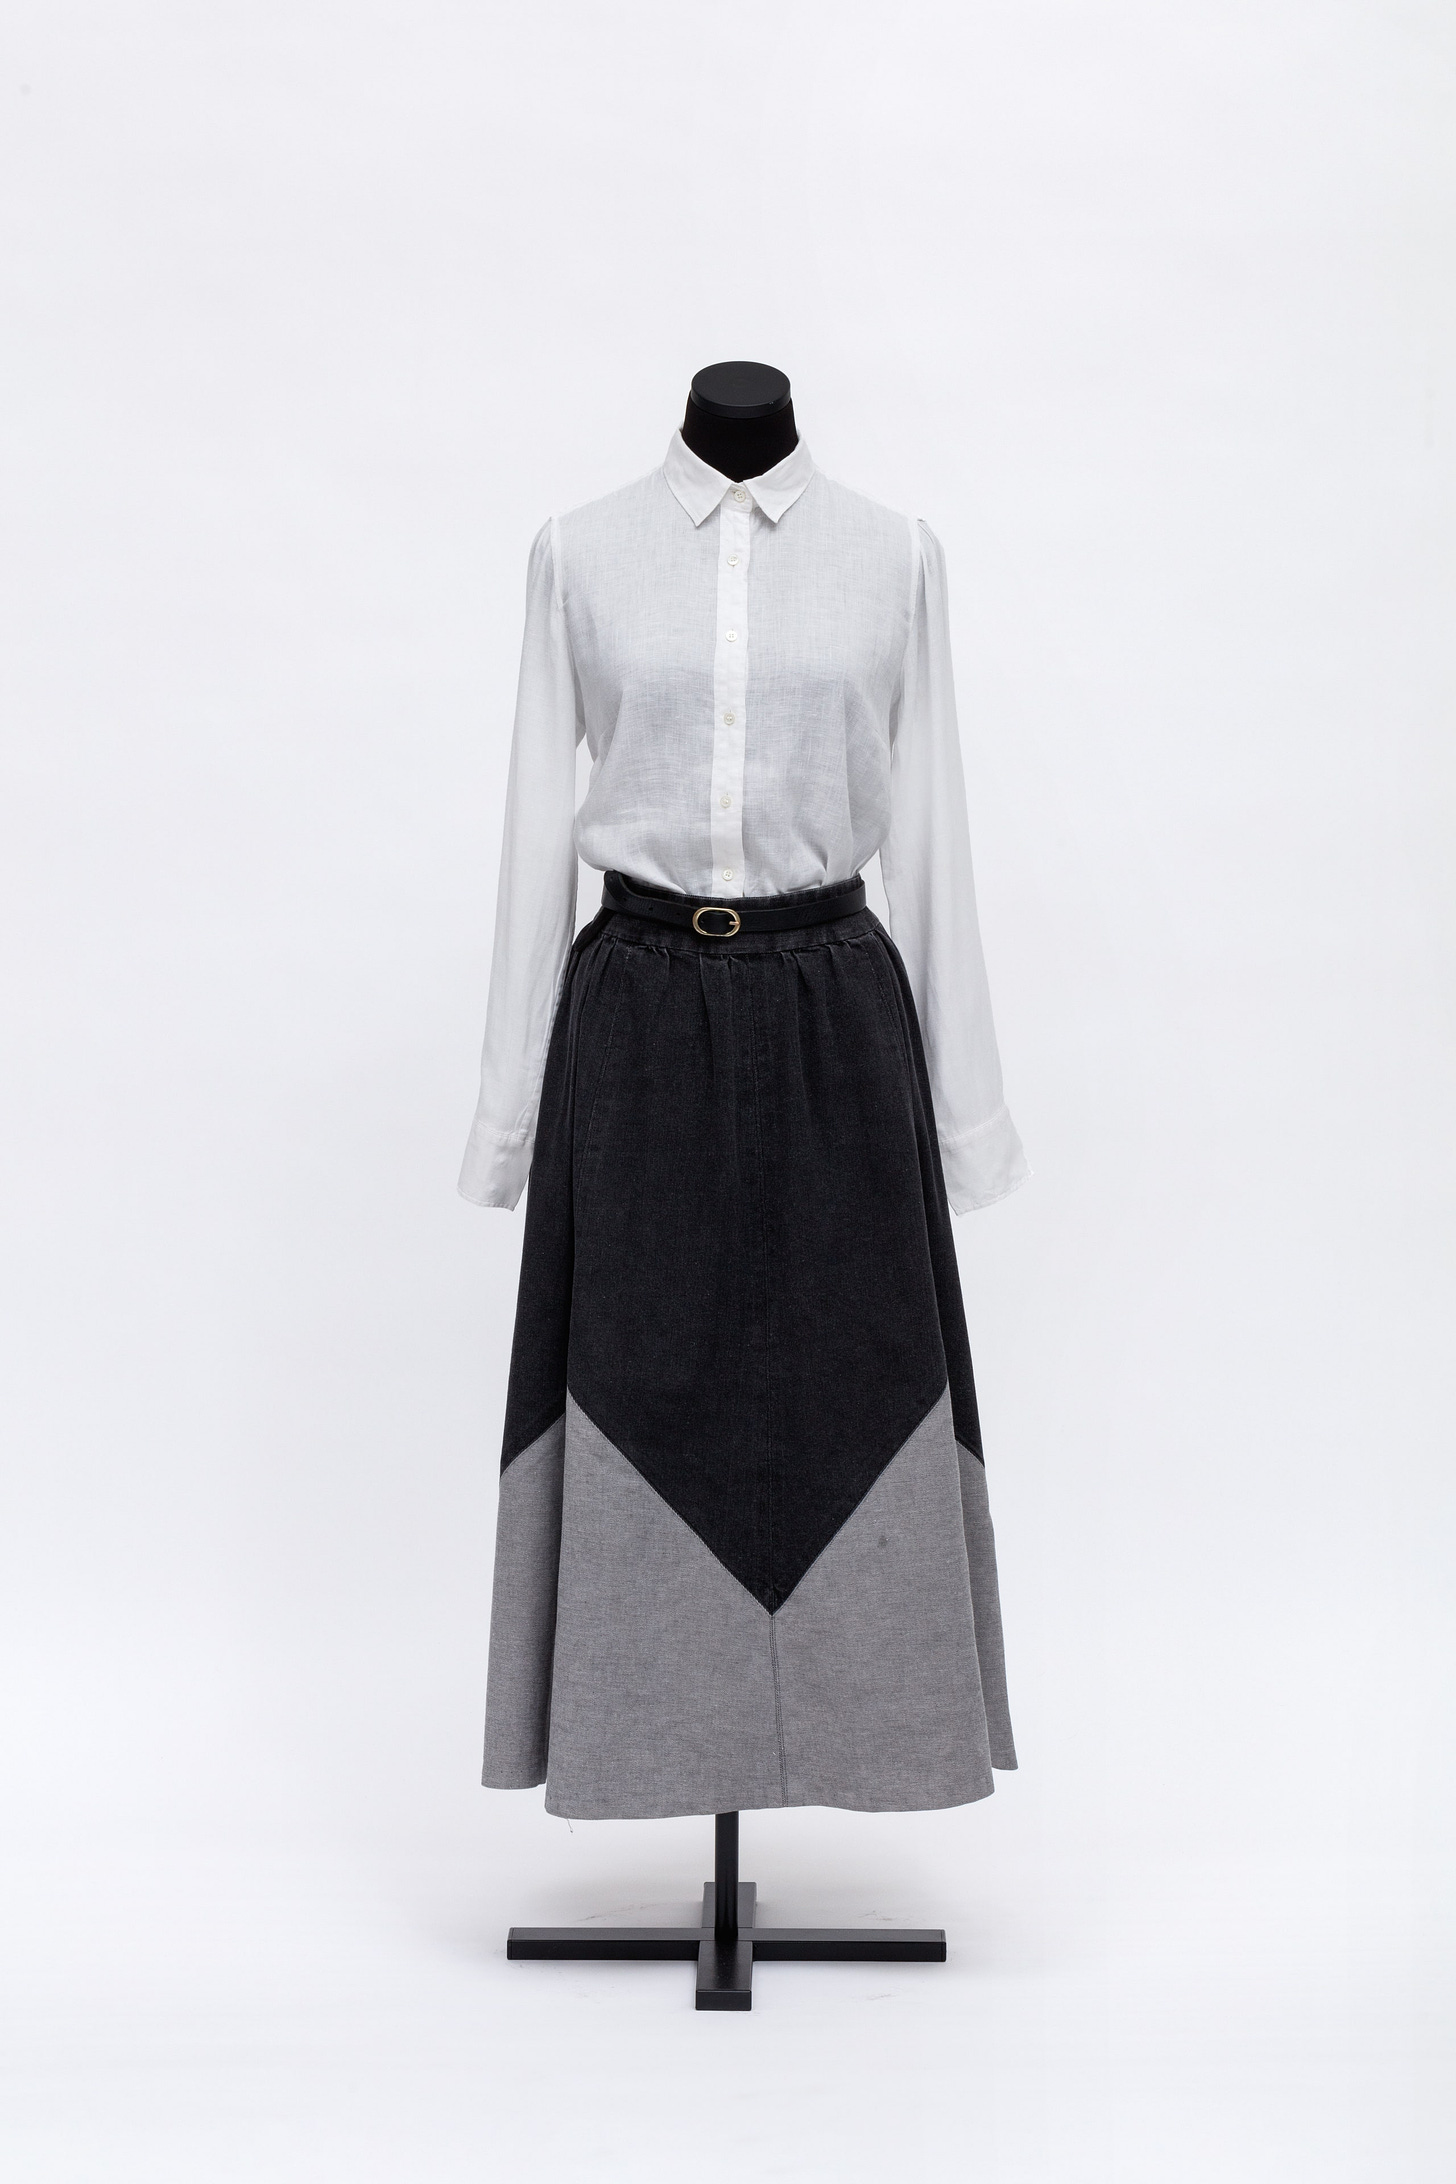 AZ Personal Uniform 3rd Decade Spring 2014 2014. Linen button down shirt leather belt denim skirt.